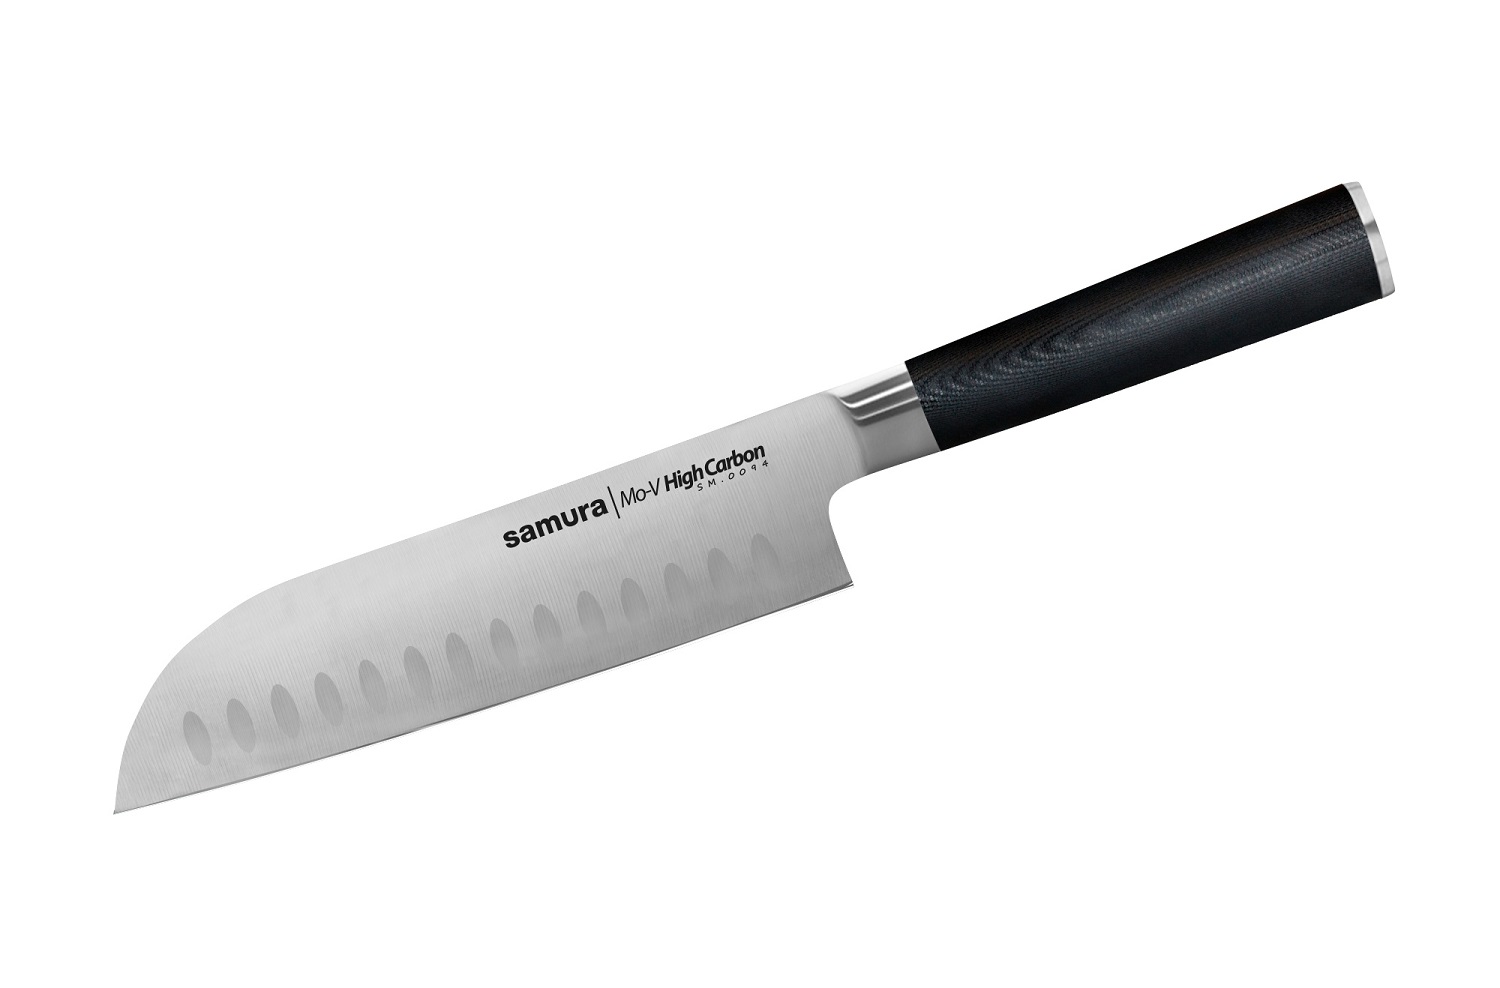 Нож Samura сантоку Mo-V, 18 см, G-10 нож накири mo v 16 7 см sm 0043 k samura